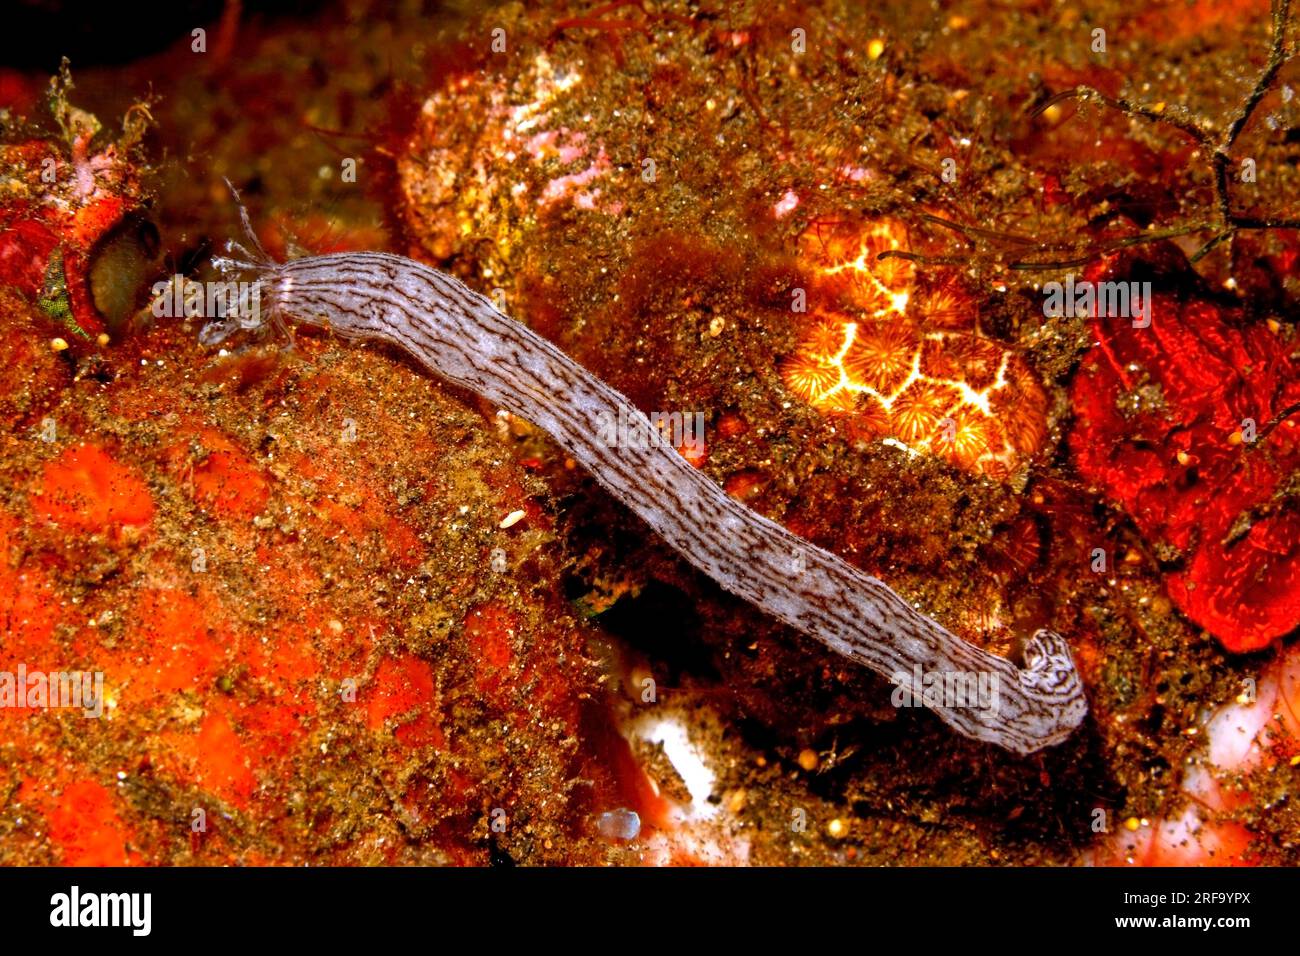 Seegurke, Synaptula sp., wahrscheinlich Lamperts Seegurke, Synaptula lamperti. Tulamben, Bali, Indonesien. Bali-Meer, Indischer Ozean Stockfoto